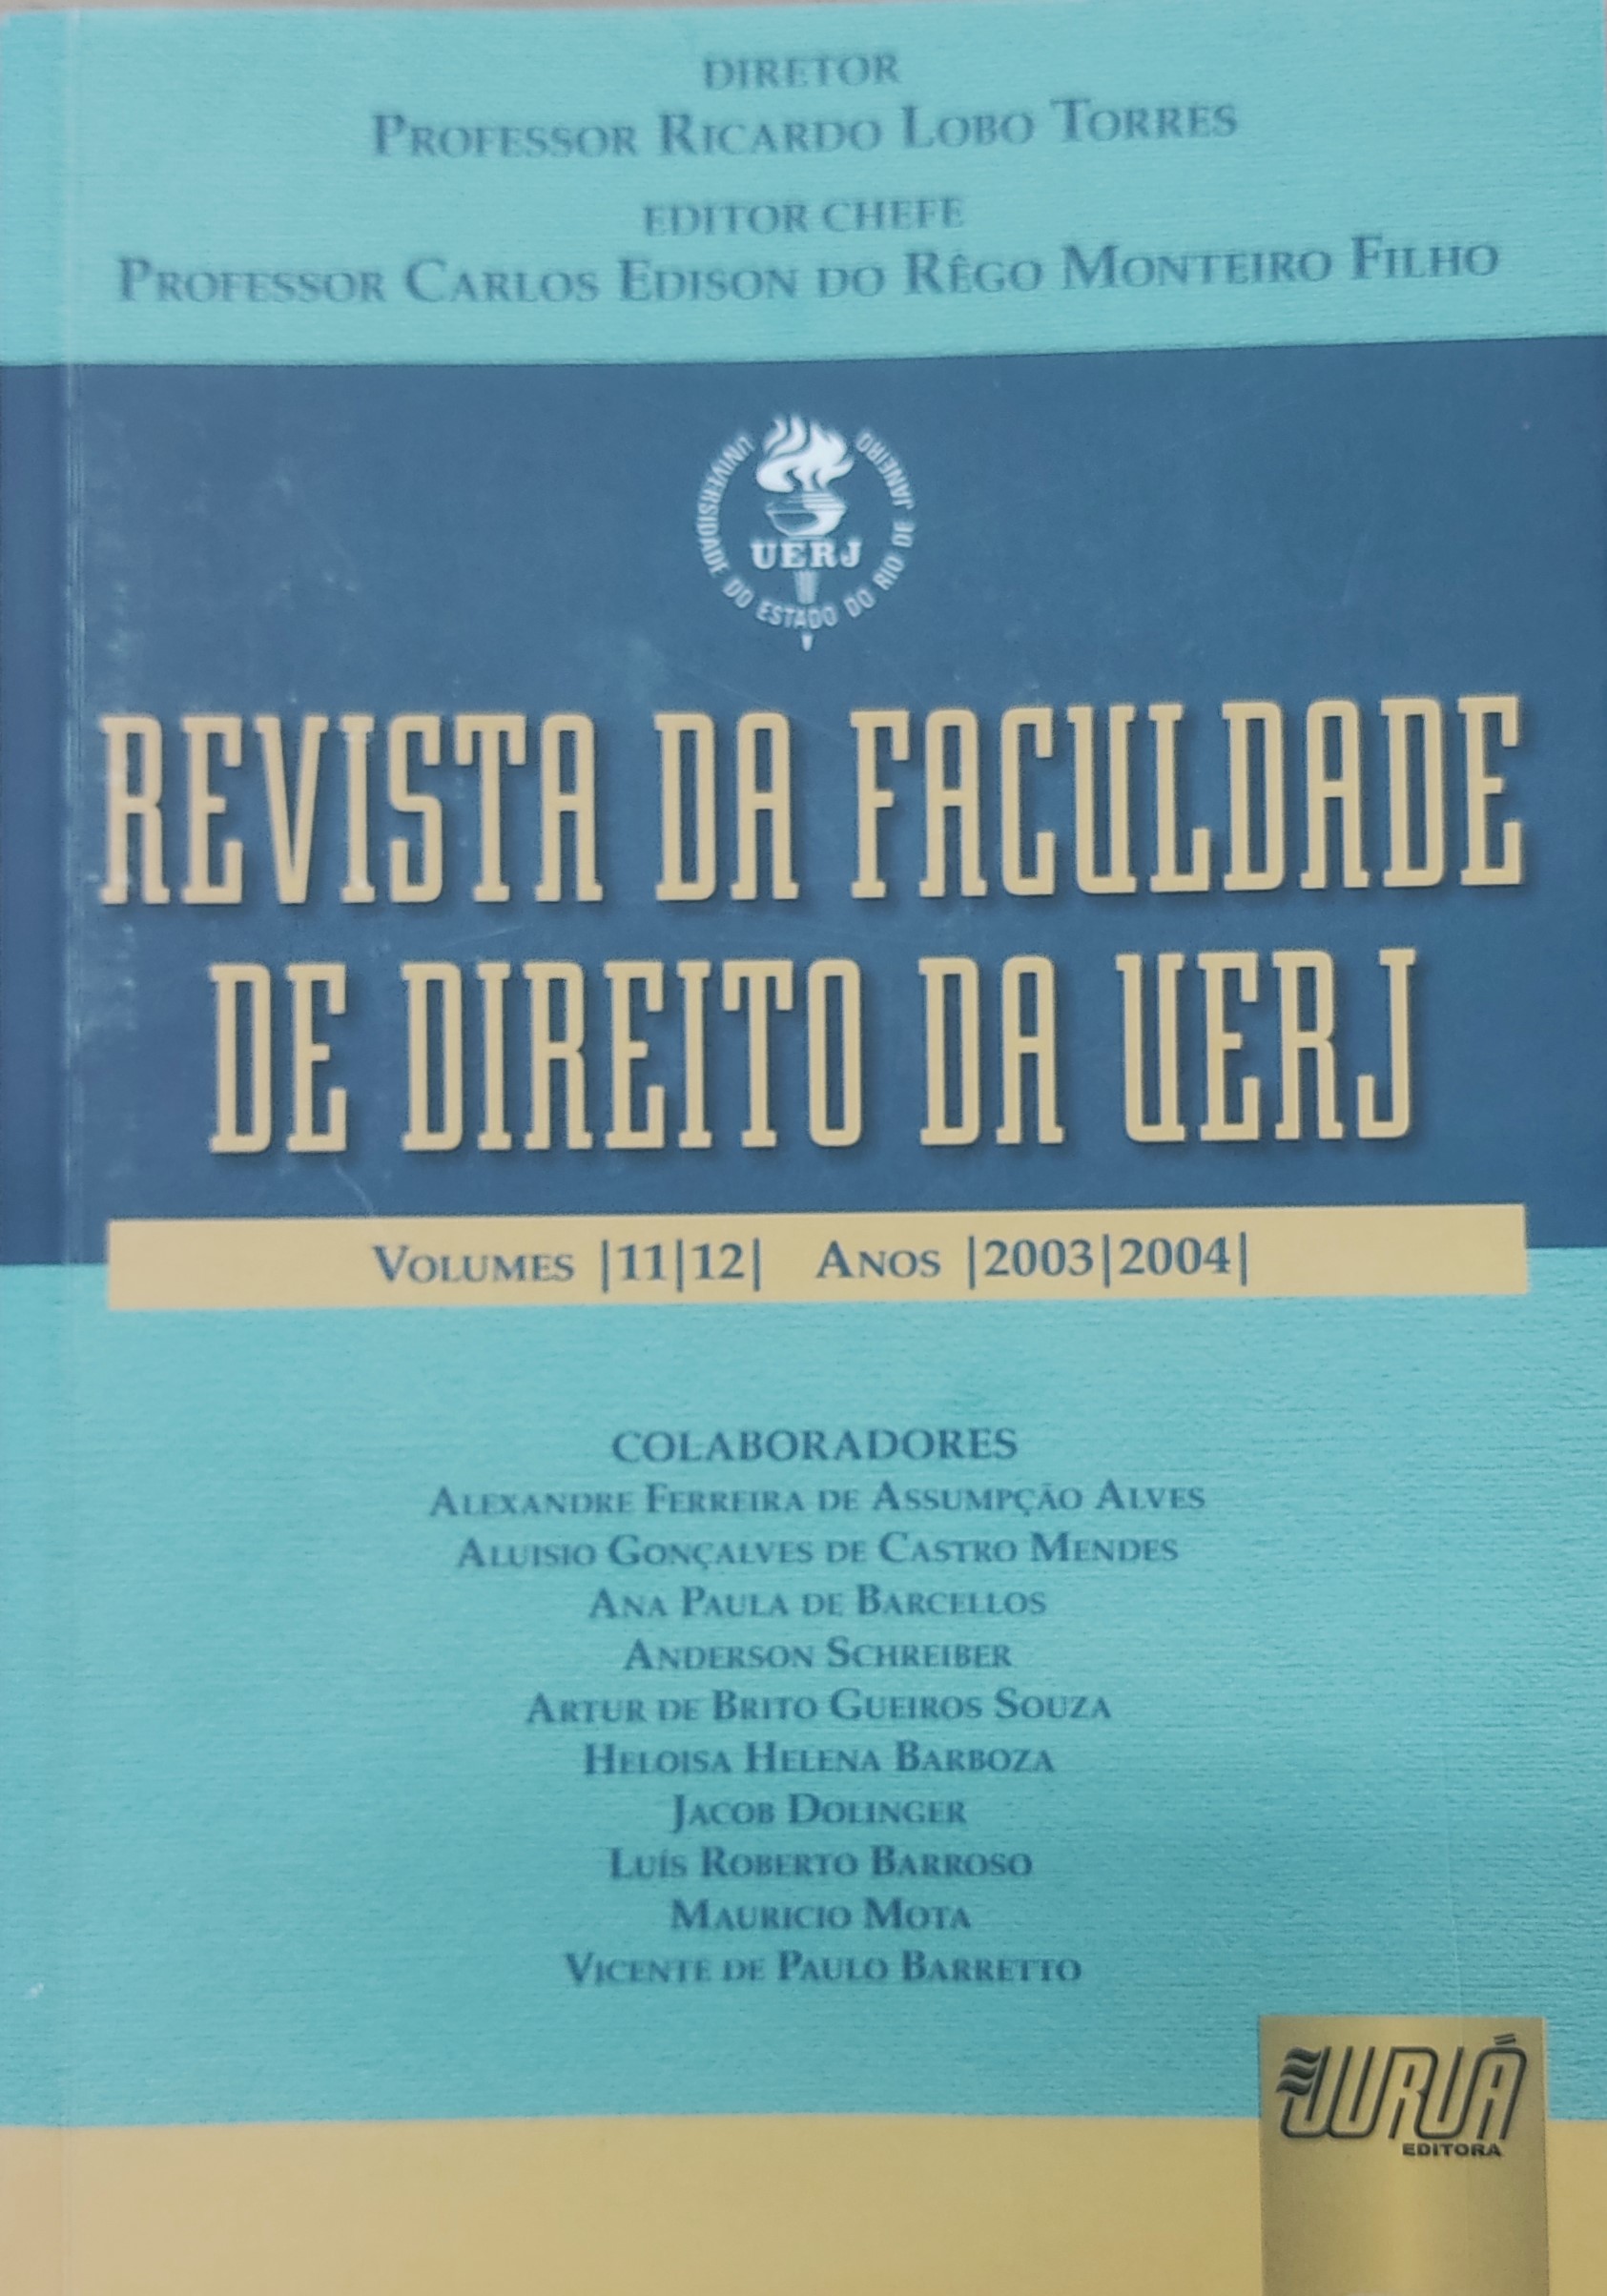 					View No. 11, 12 (2003) (2004): Revista da Faculdade de Direito da UERJ - RFD
				